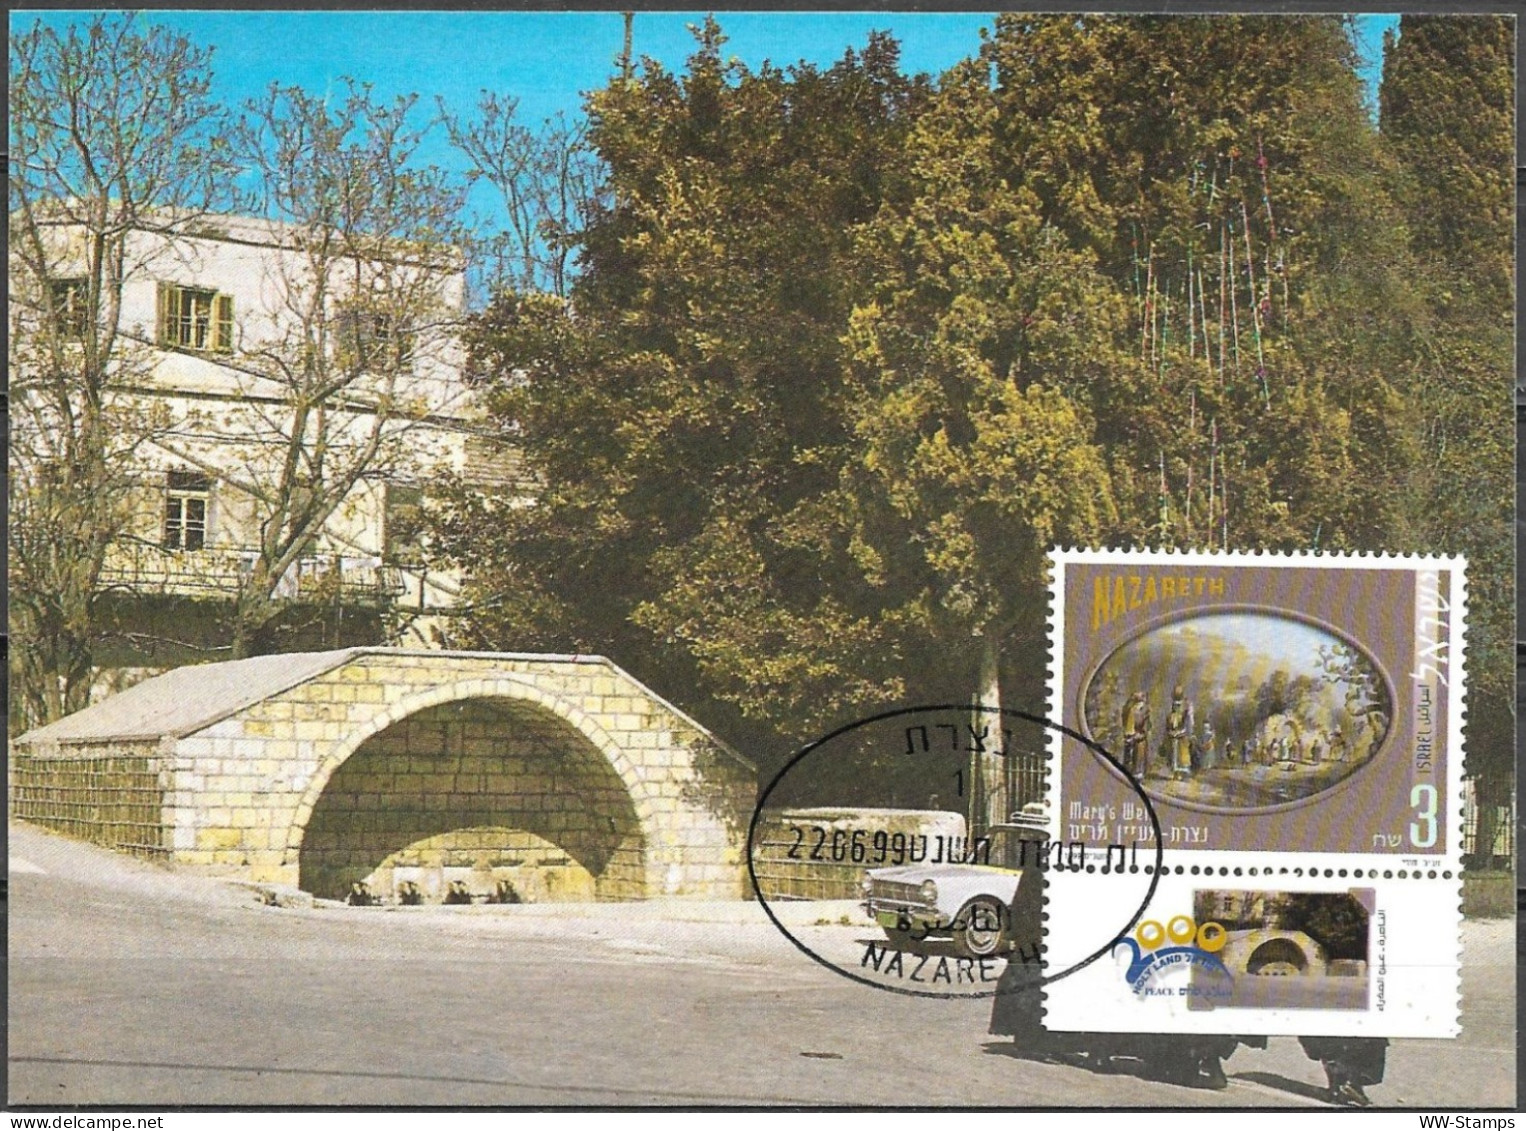 Israel 1999 Maximum Card Nazareth Mary's Well Pilgrimage To The Holy Land [ILT1646] - Cartoline Maximum